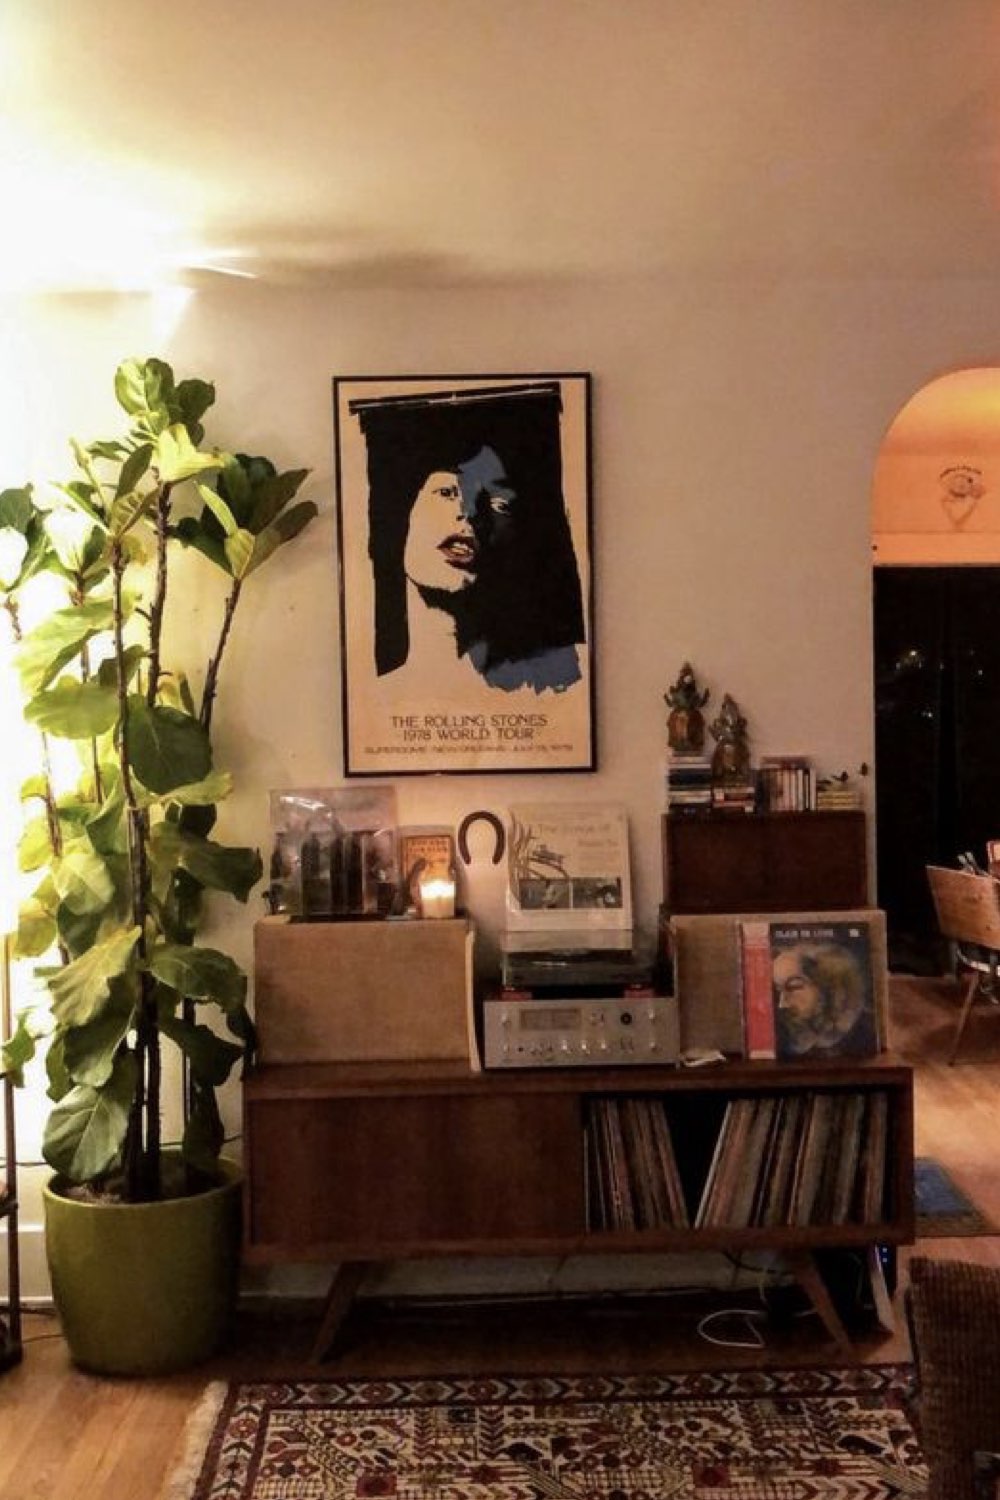 comment reussir deco salon meuble vintage platine vinyle affiche musique plante verte taille XL lumière soir